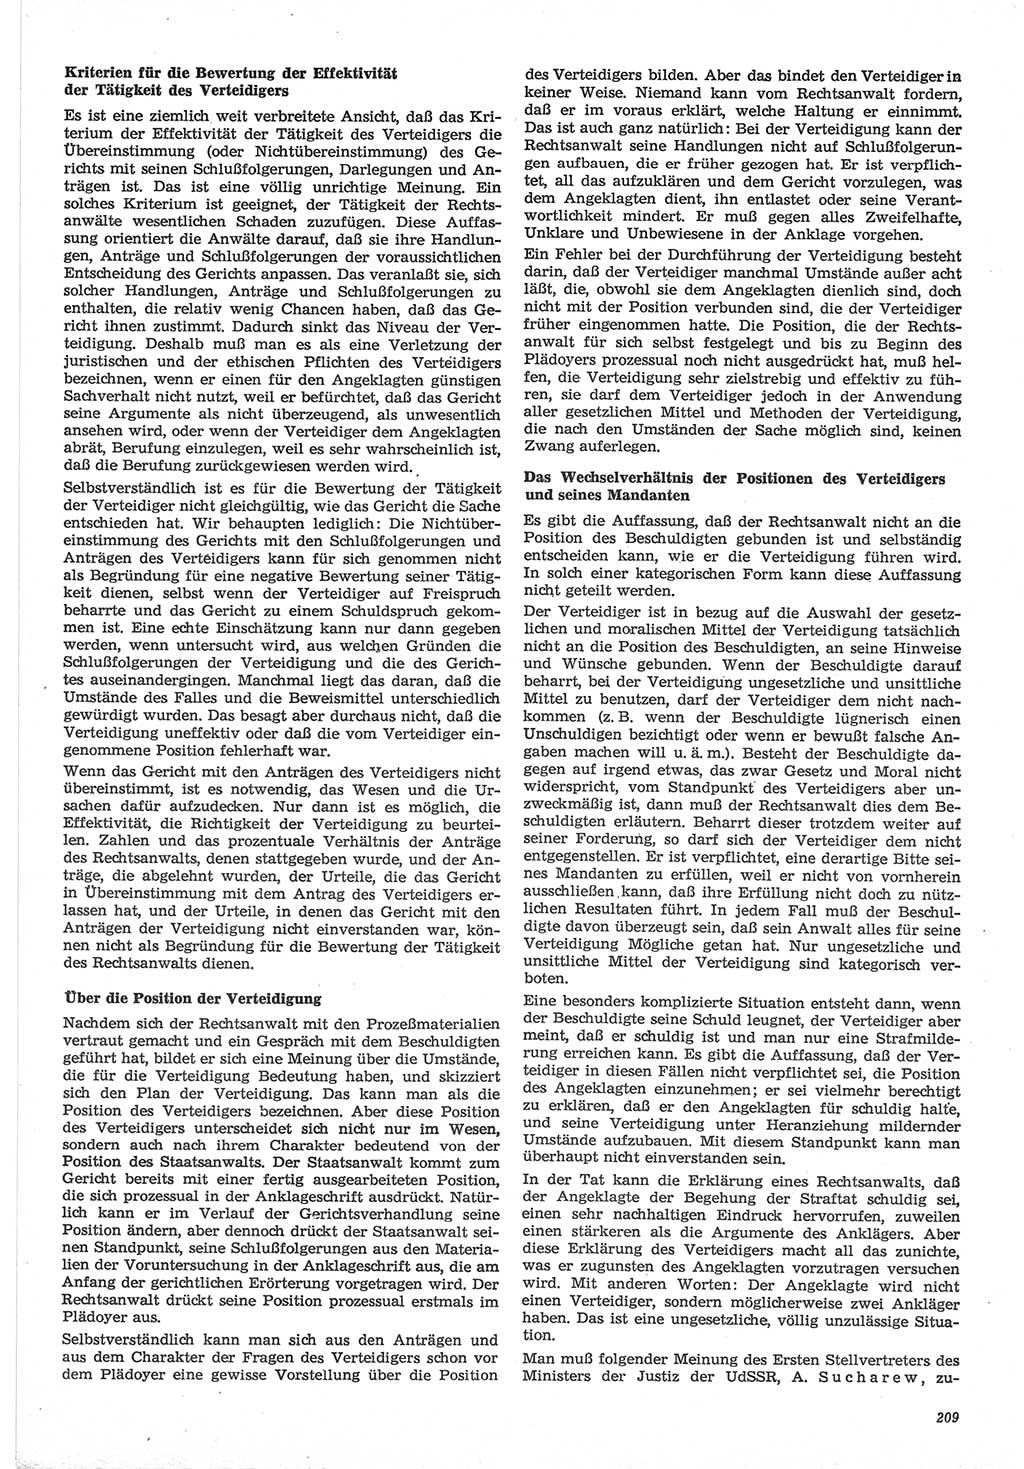 Neue Justiz (NJ), Zeitschrift für Recht und Rechtswissenschaft-Zeitschrift, sozialistisches Recht und Gesetzlichkeit, 31. Jahrgang 1977, Seite 209 (NJ DDR 1977, S. 209)